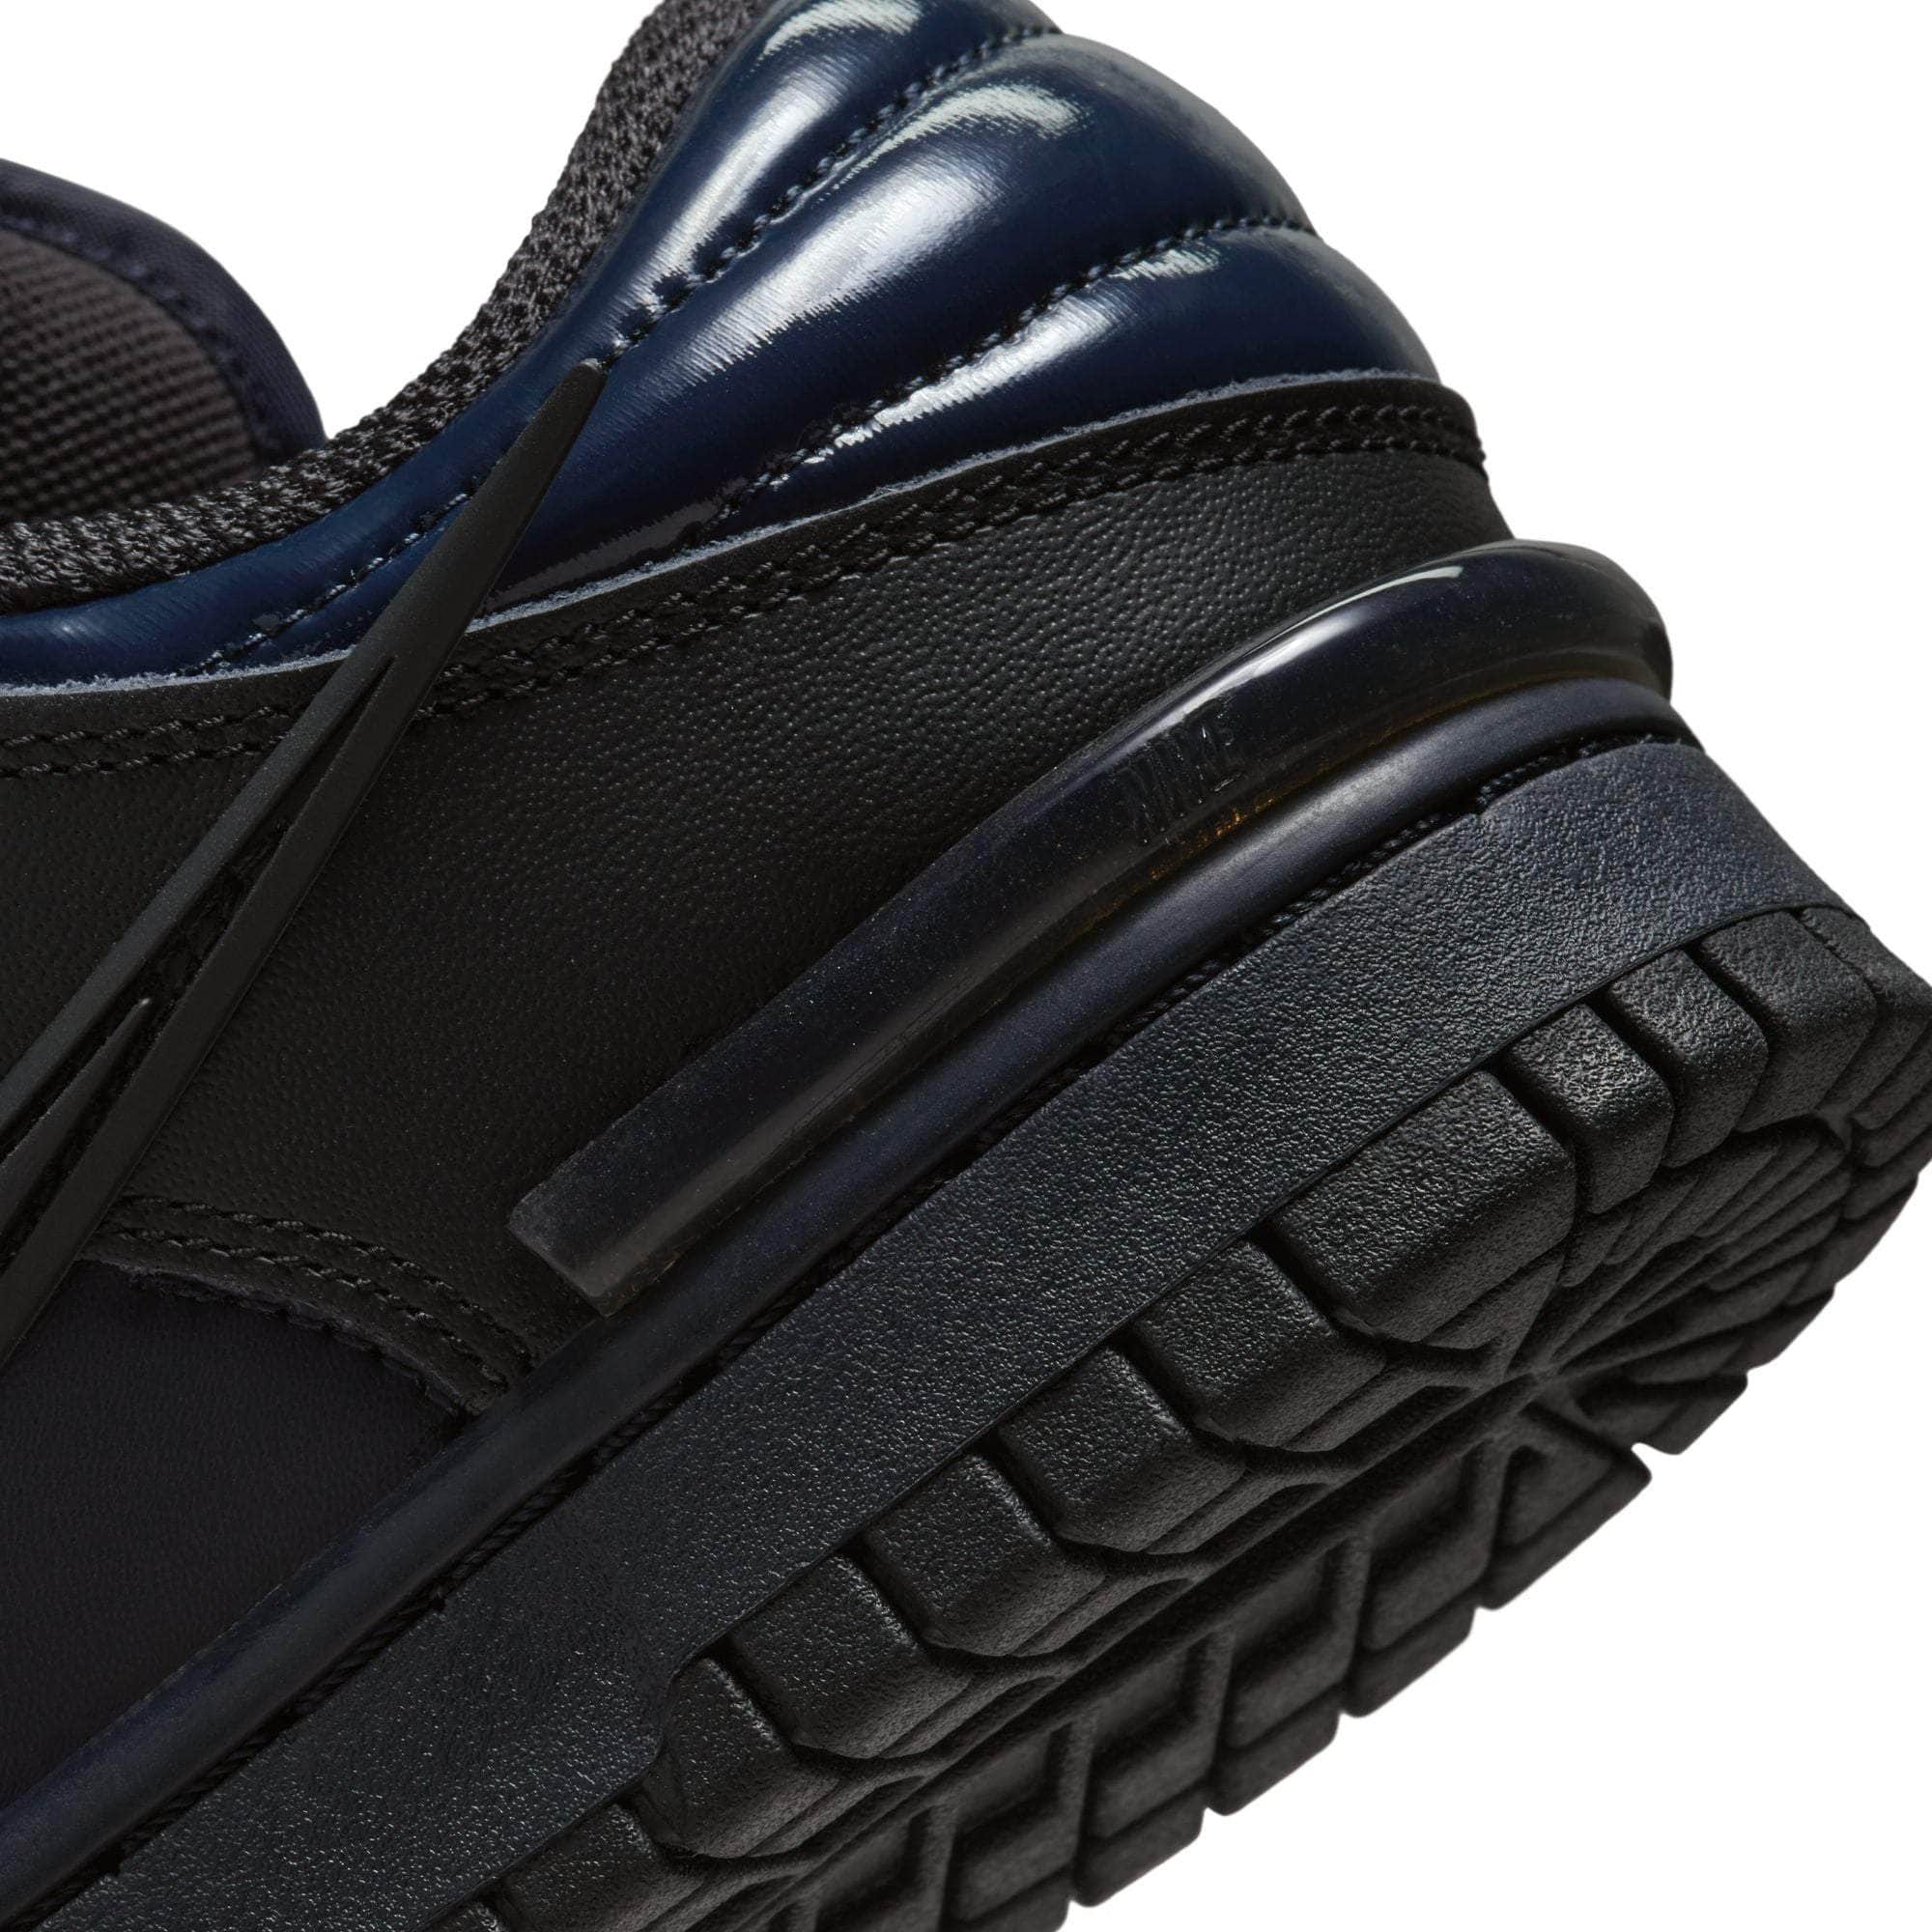 NIKE FOOTWEAR Nike Dunk Low Twist "Dark Obsidian" - Women's